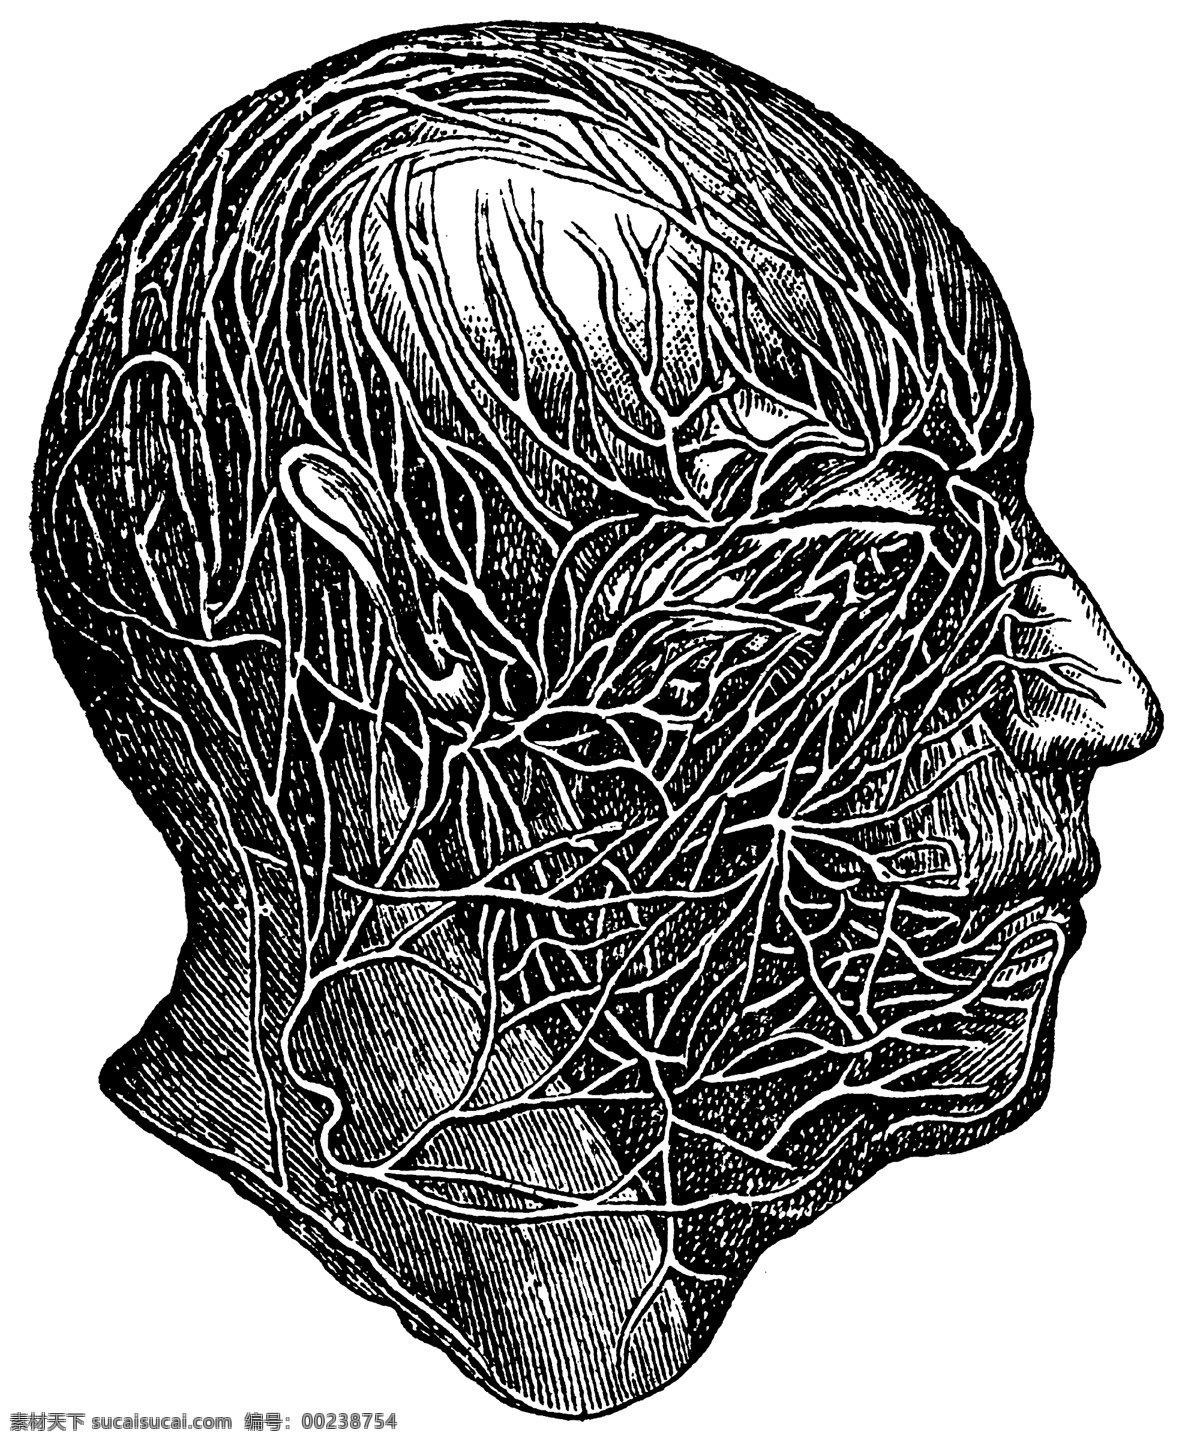 人体 头部 血管 神经网 神经 网 人体头部 医学 解剖 法医 人体解剖 医疗护理 现代科技